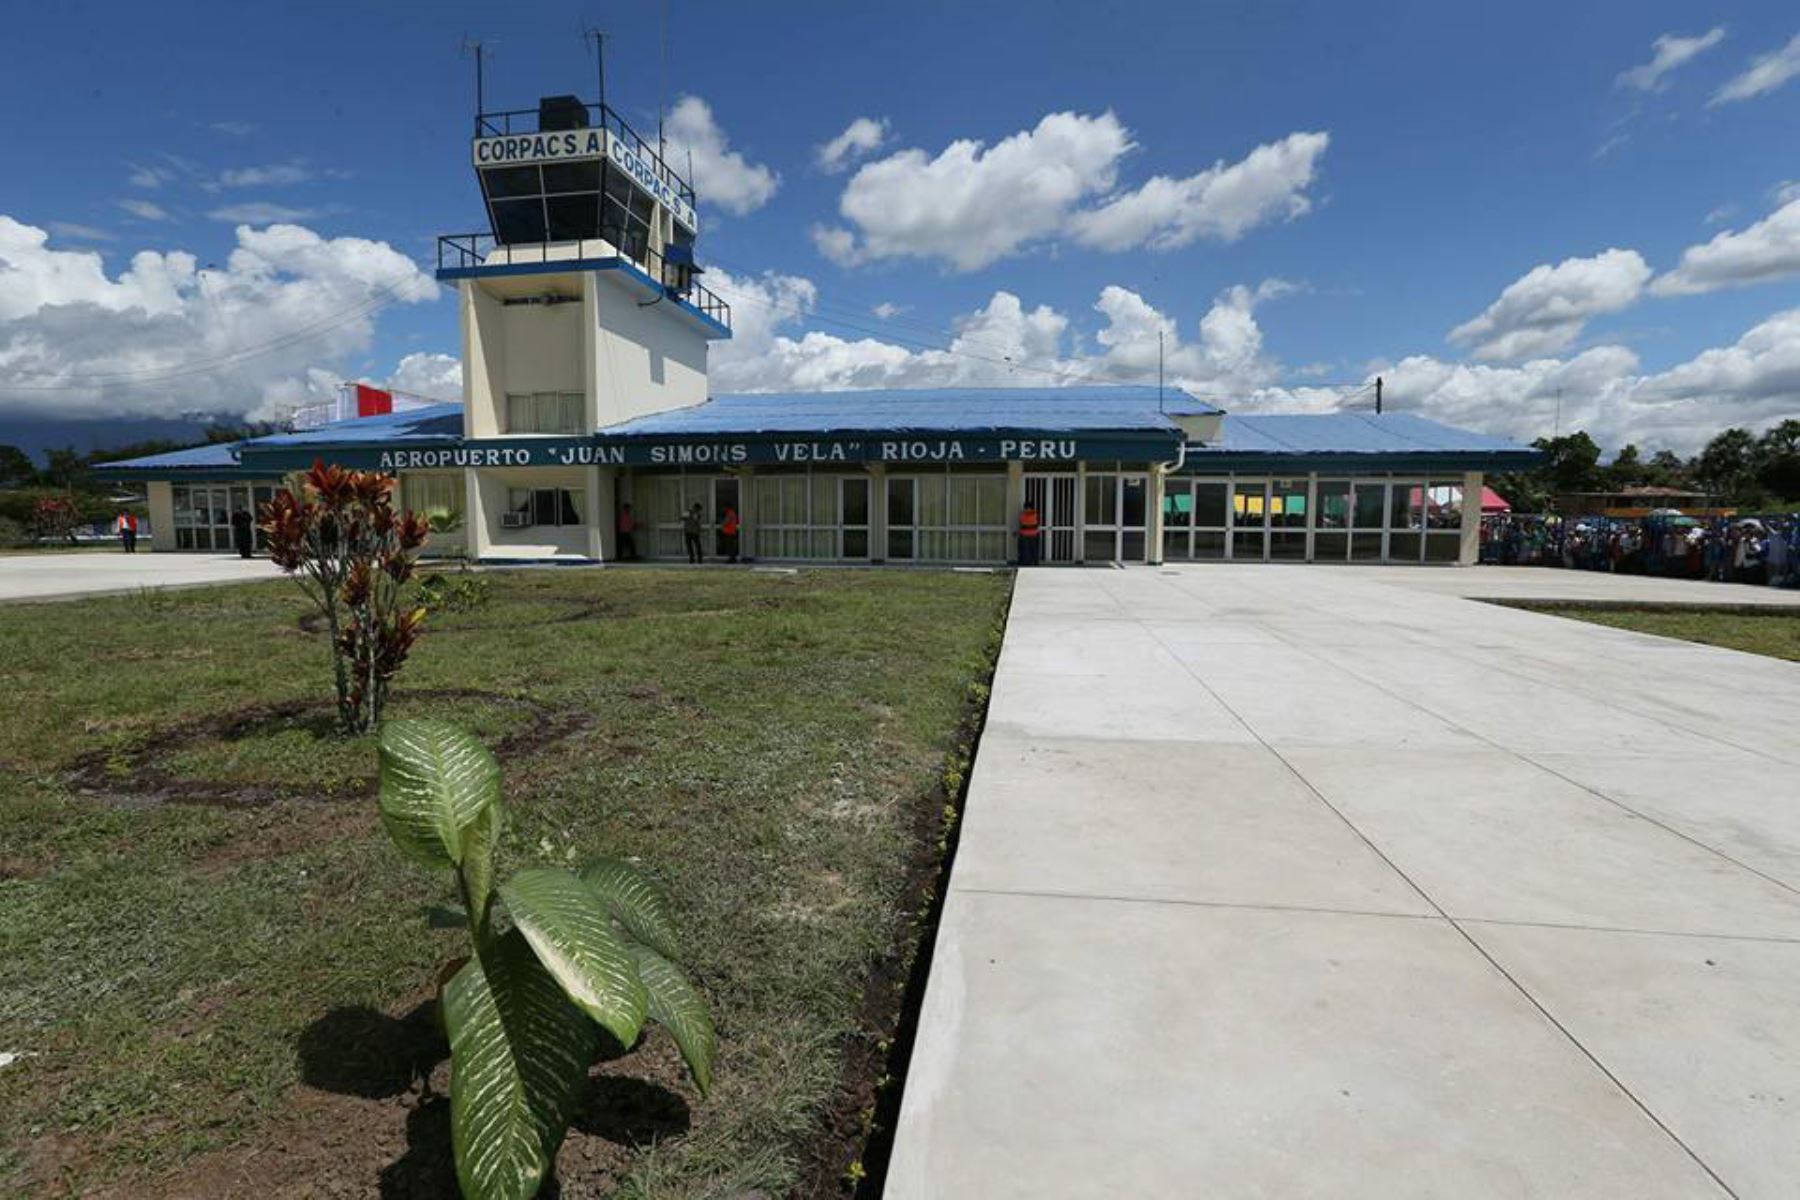 El aeropuerto Juan Simón Vela, de la provincia de Rioja, recibirá próximamente vuelos comerciales, anunció el ministro de Transportes y Comunicaciones, Edmer Trujillo, durante el Muni Ejecutivo realizado en la región San Martín.